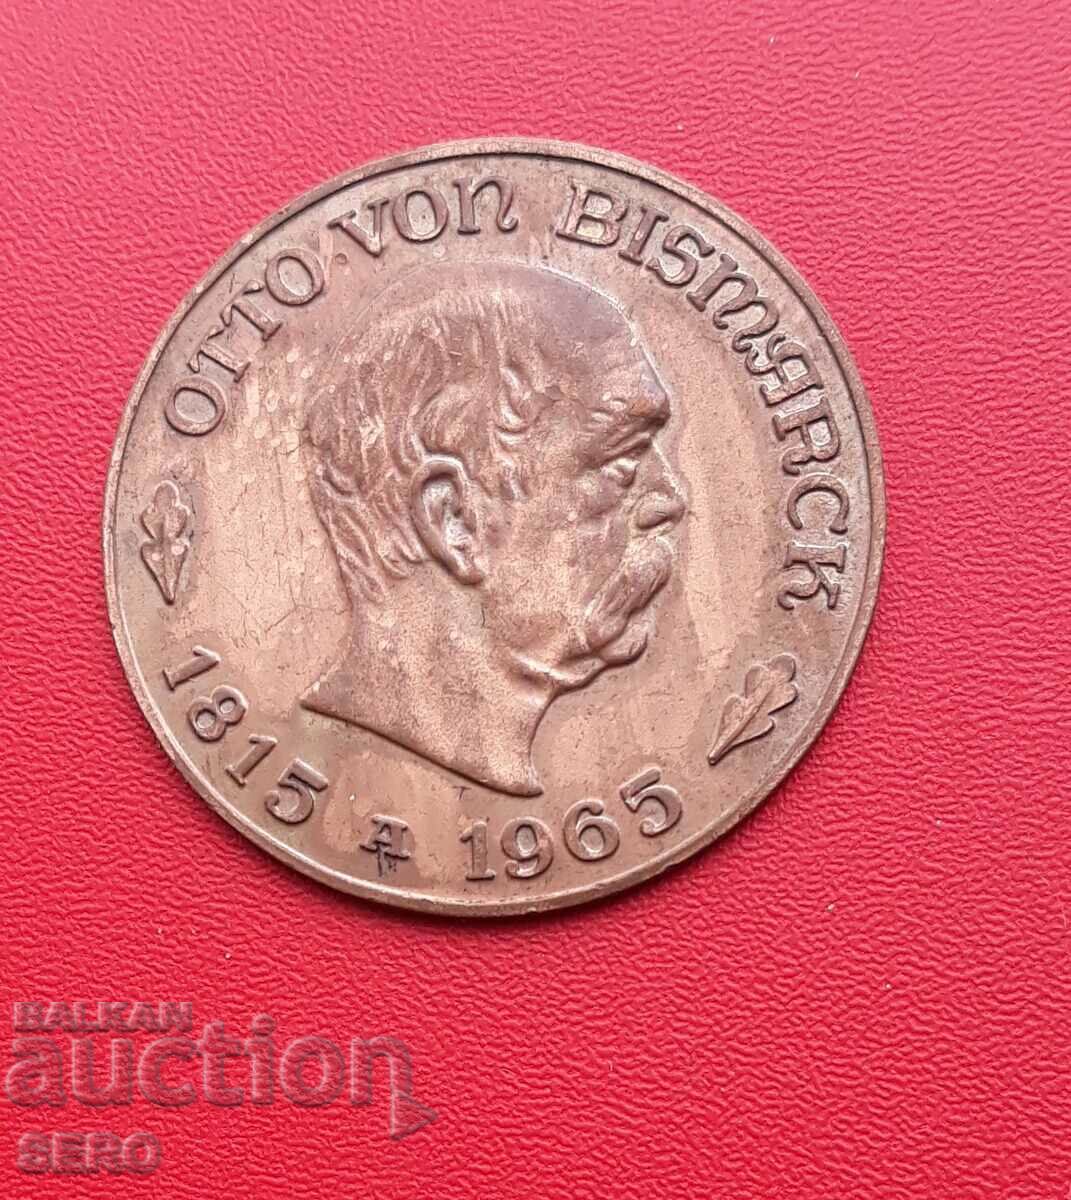 Germania-GDR-medalie 1965-Bismarck 1815-1965